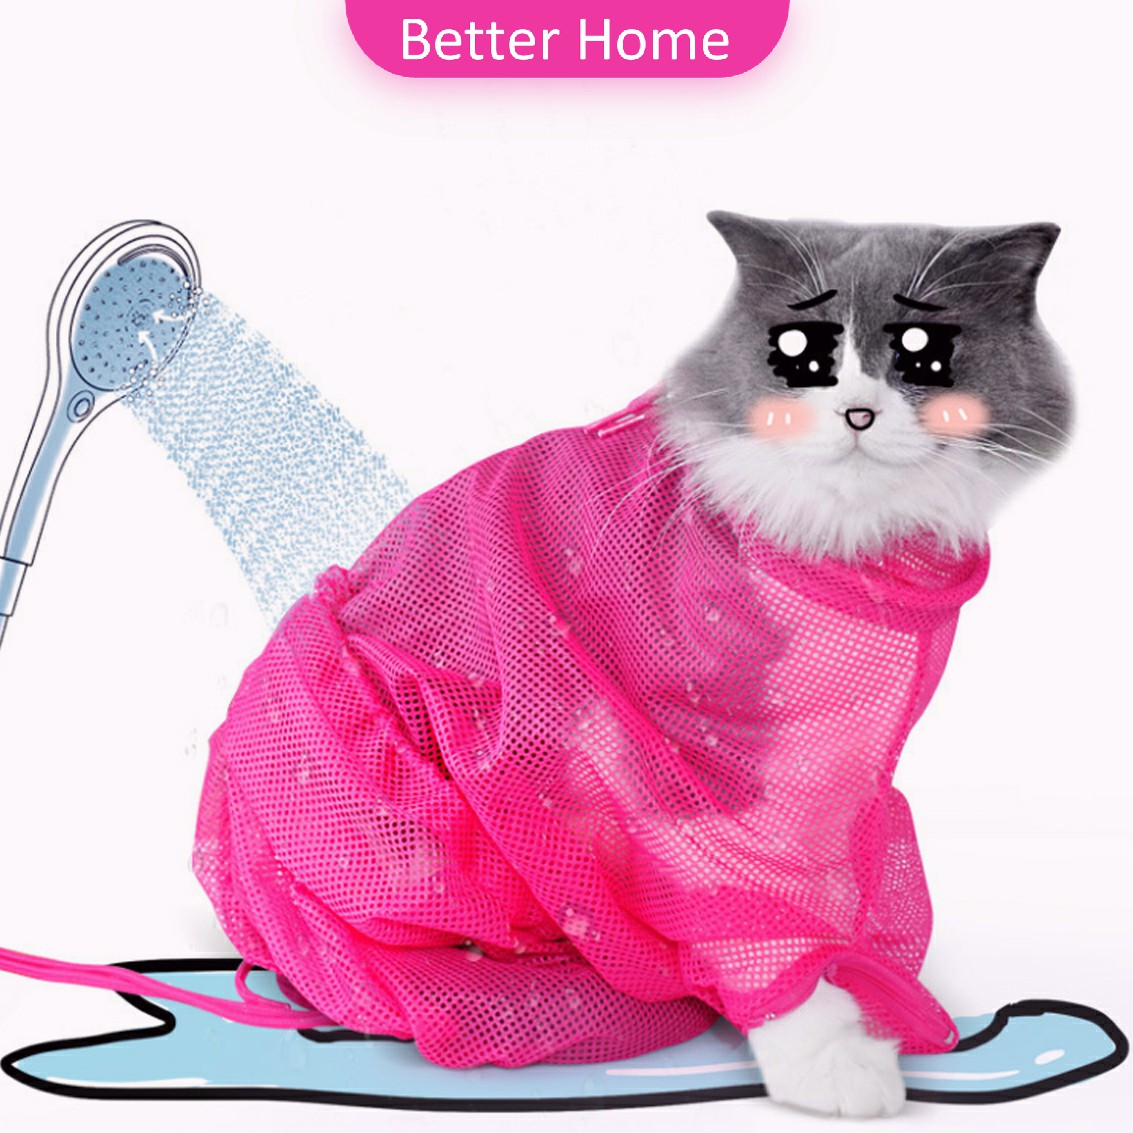 ถุงอาบน้ำแมว พร้อมส่ง ถุงตาข่ายอาบน้ำแมว ถุงตัดเล็บแมว ถุงฉีดยาแมว แคะหูแมว อเนกประสงค์  Cat bath bag